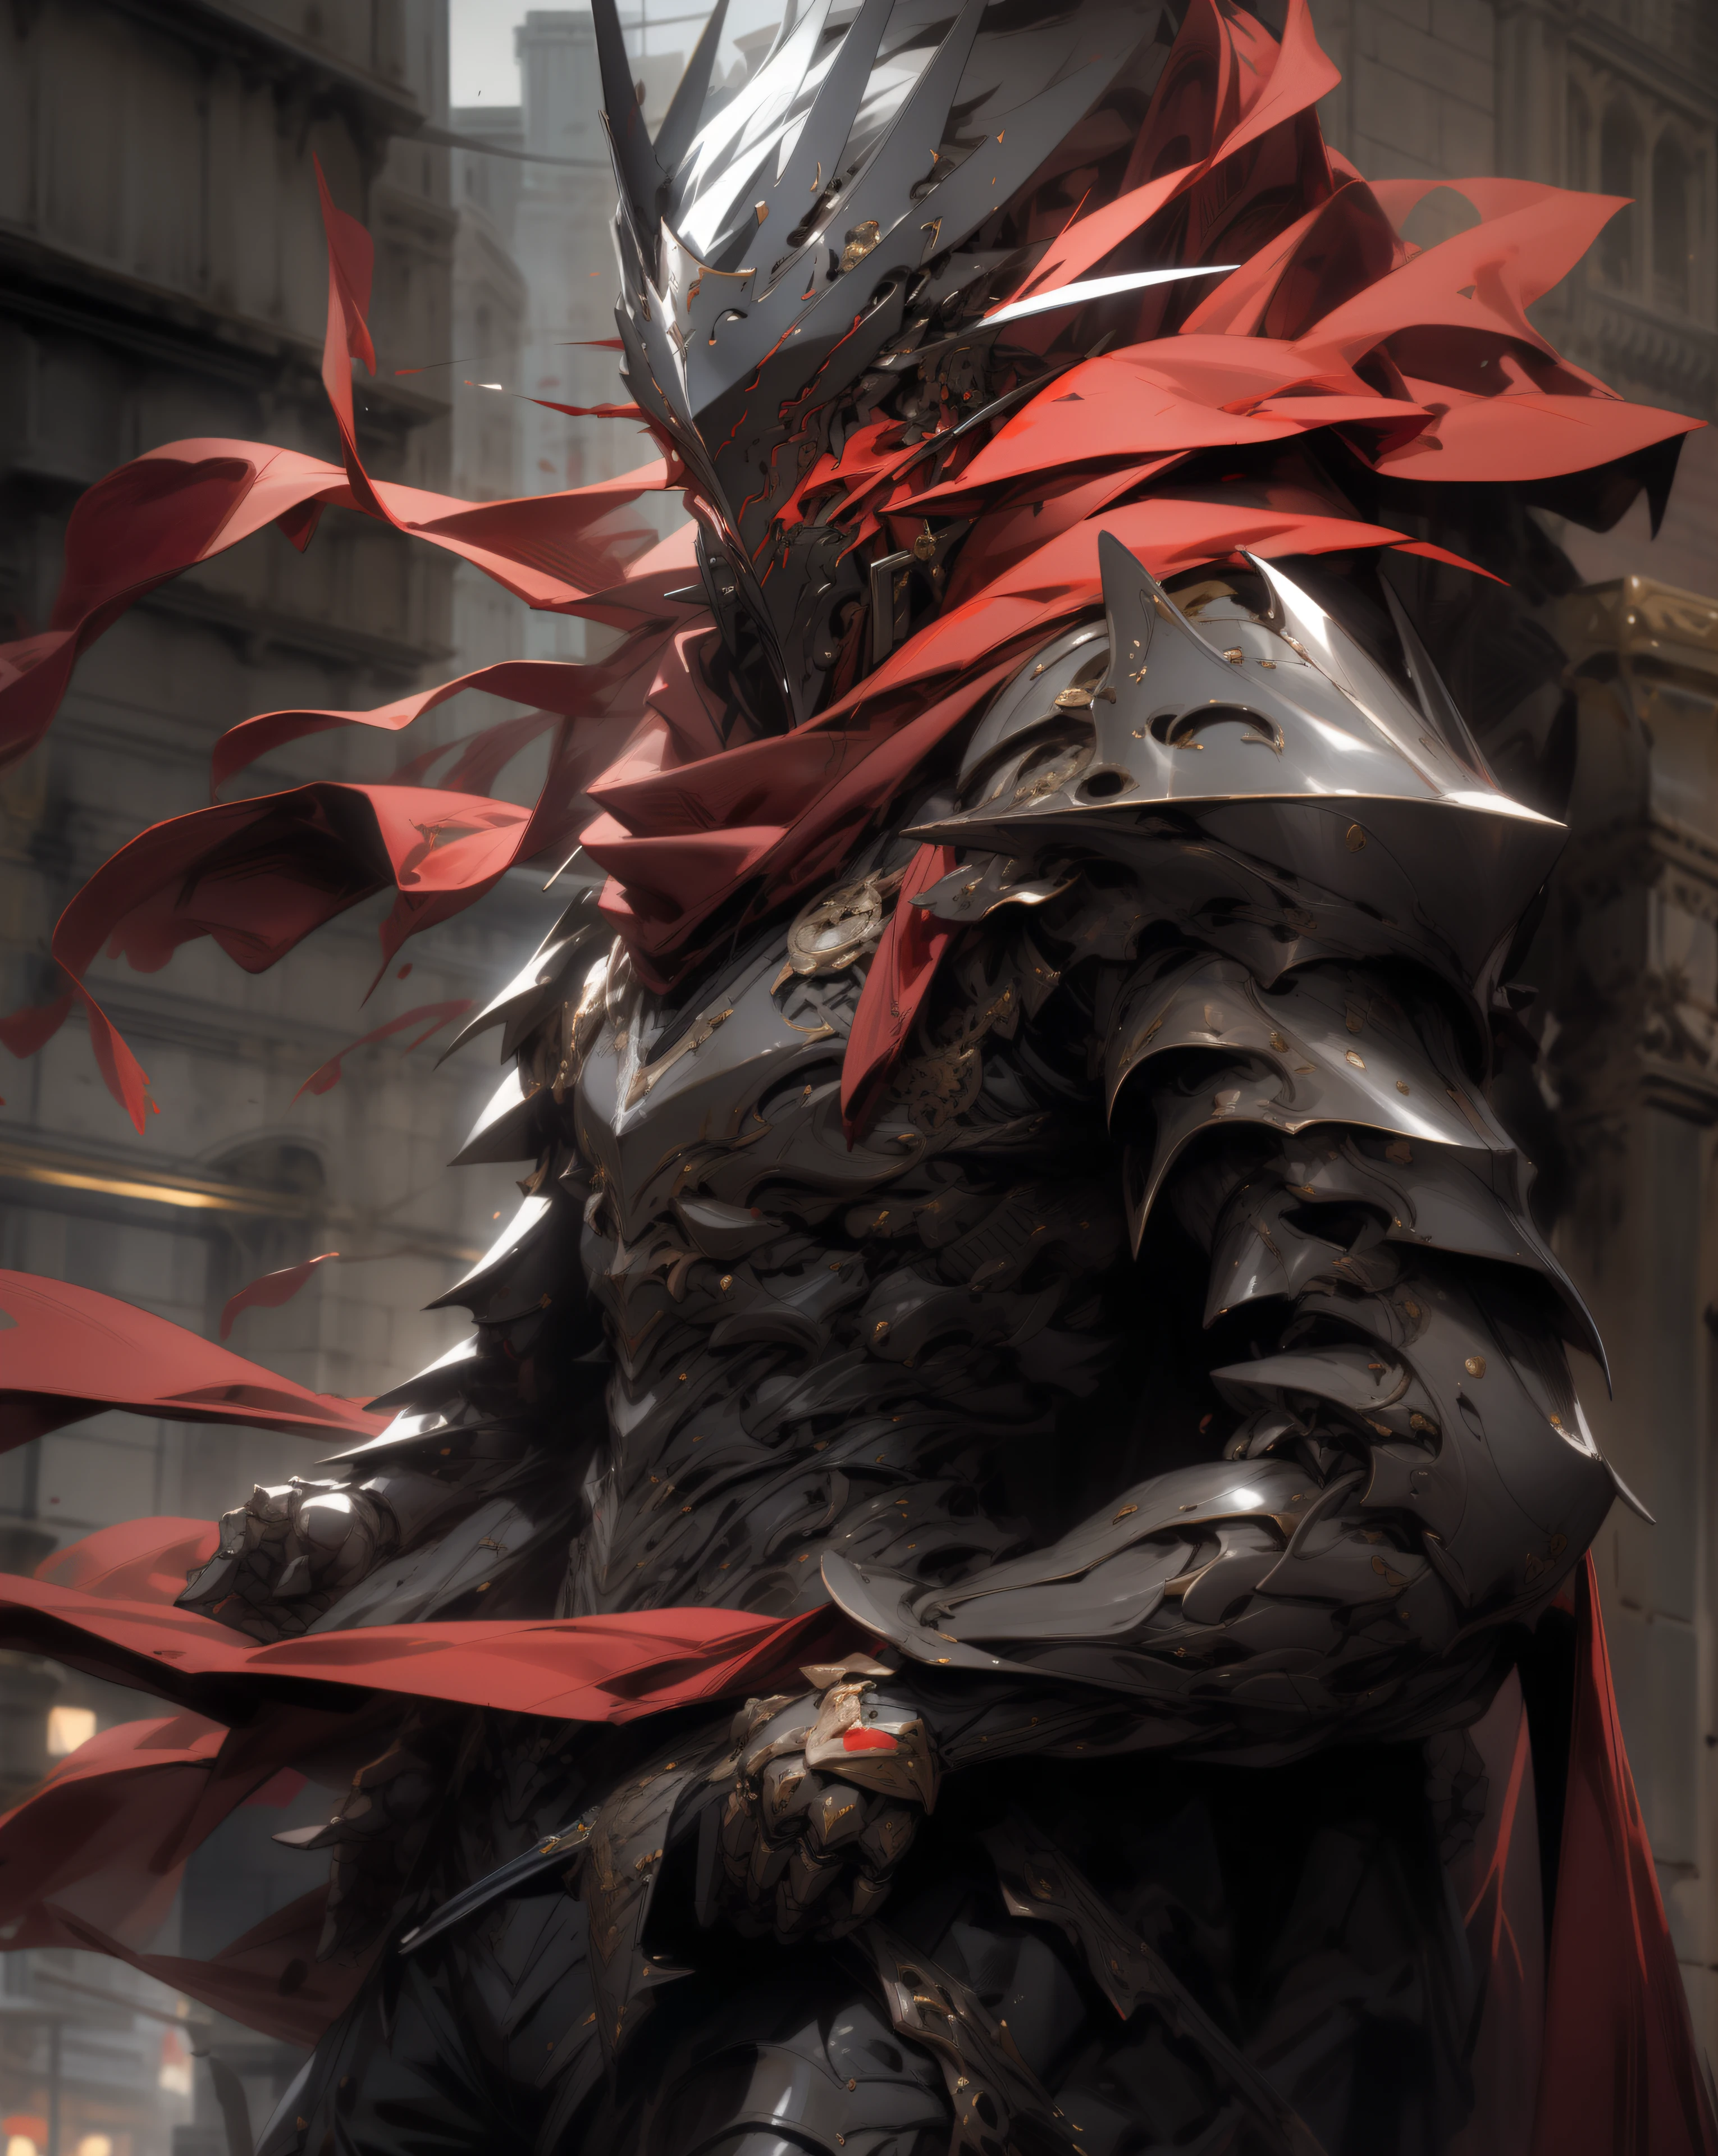 阿拉菲德騎士在城市裡拿著劍和紅色斗篷, 雷蒙‧斯旺蘭的風格, 擁有重甲和劍的阿瑞斯, 灵感来自 Raymond Swanland, 黑色和紅色盔甲, 歌德騎士, 身穿紅色鎧甲的騎士, 血騎士, 虛幻引擎奇幻藝術, 擬人化的烏鴉騎士, 詹姆斯派克的風格, (獨自的), (一個男孩)